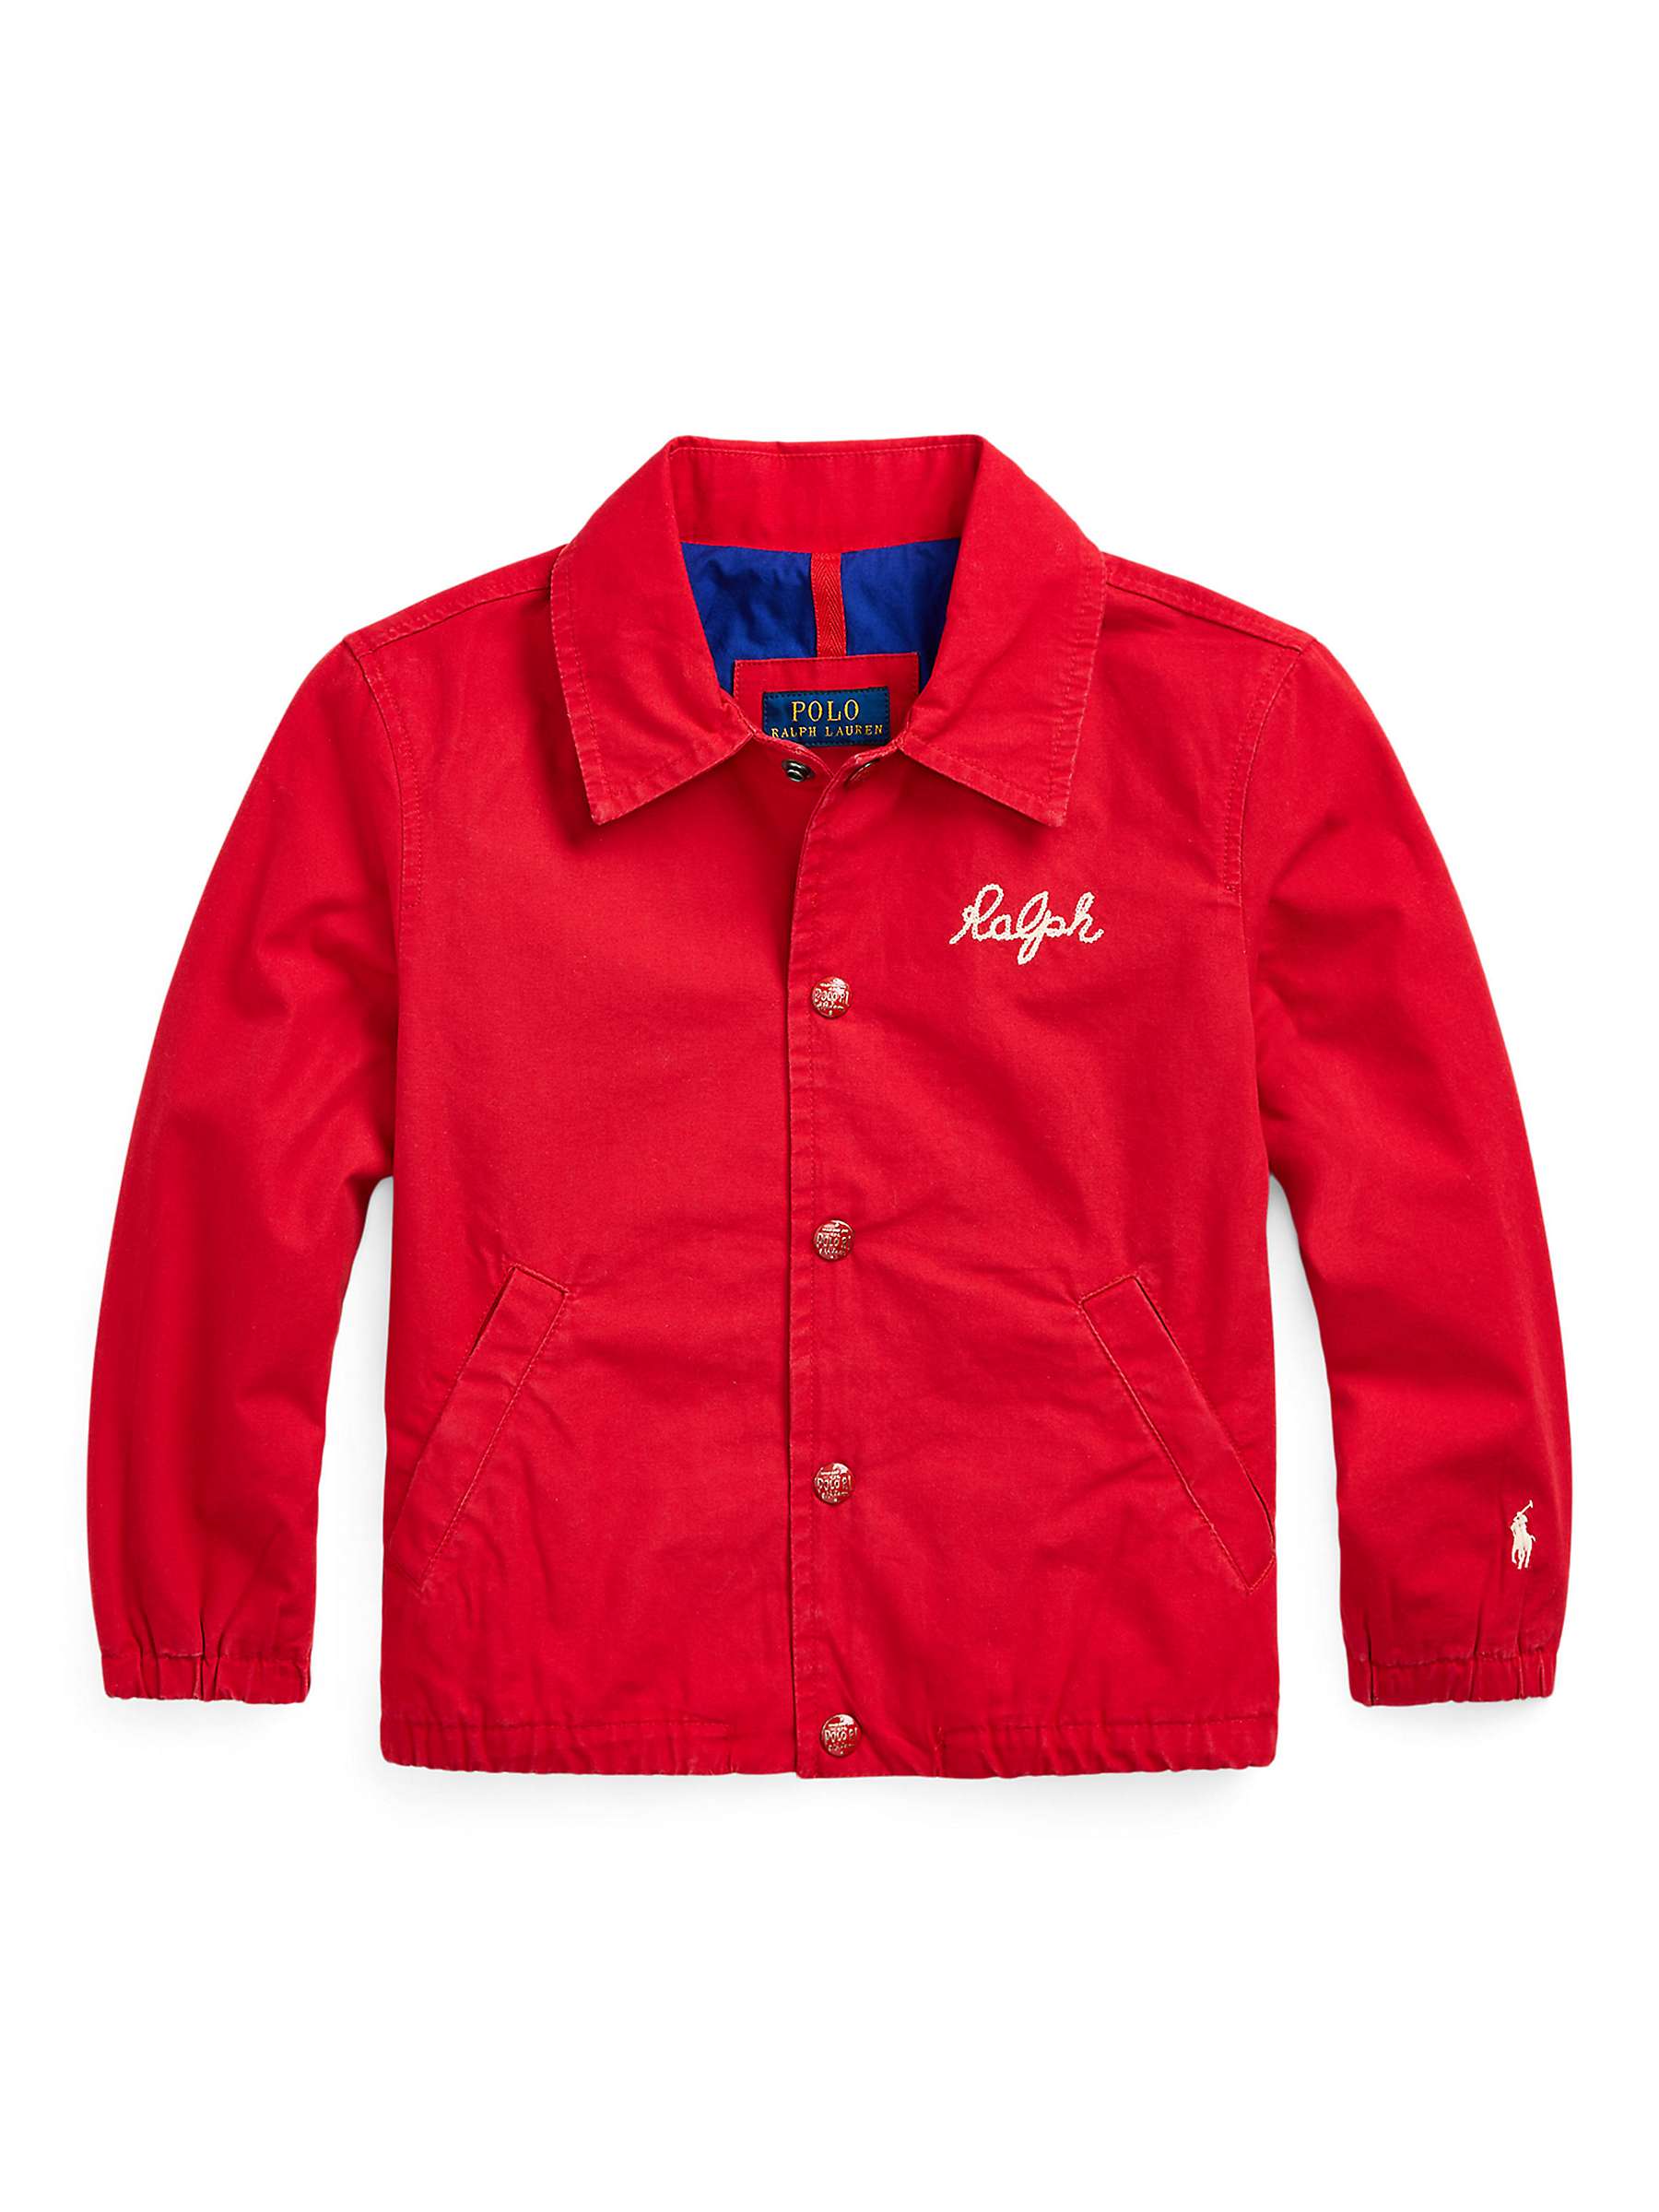 Buy Ralph Lauren Kids' Coach Windbreaker Jacket, Red Online at johnlewis.com